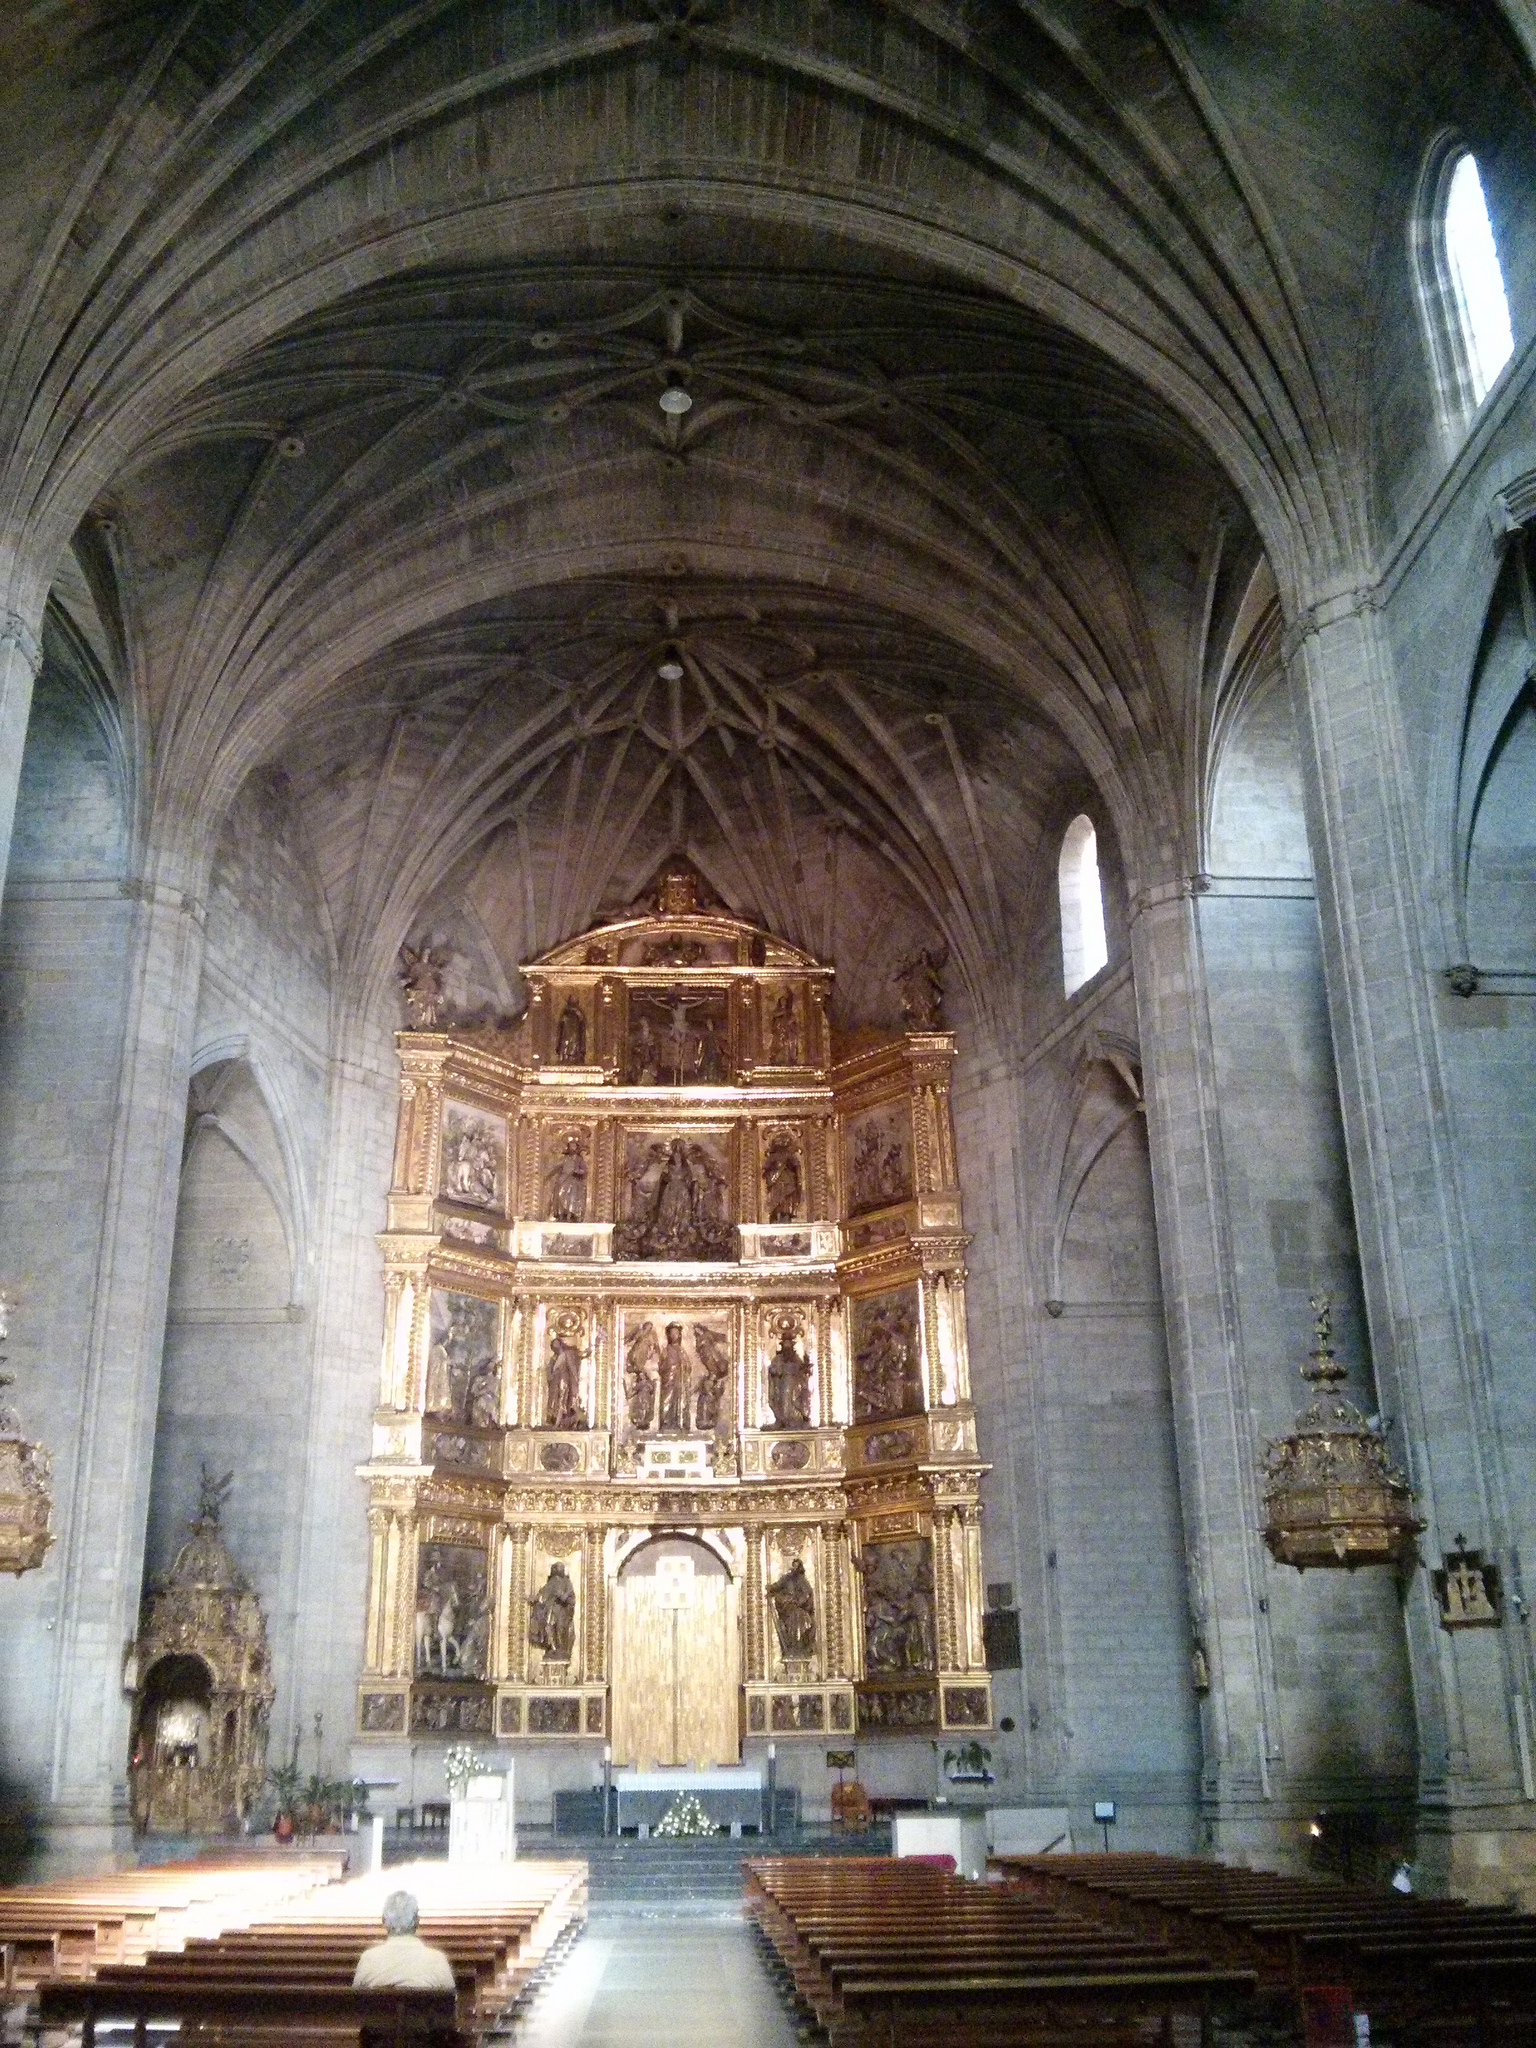  Interior de la Concatedral de Santa María la Redonda (fotografía cedida en Flickr por Antonio Periago Miñarro bajo las siguientes condiciones)